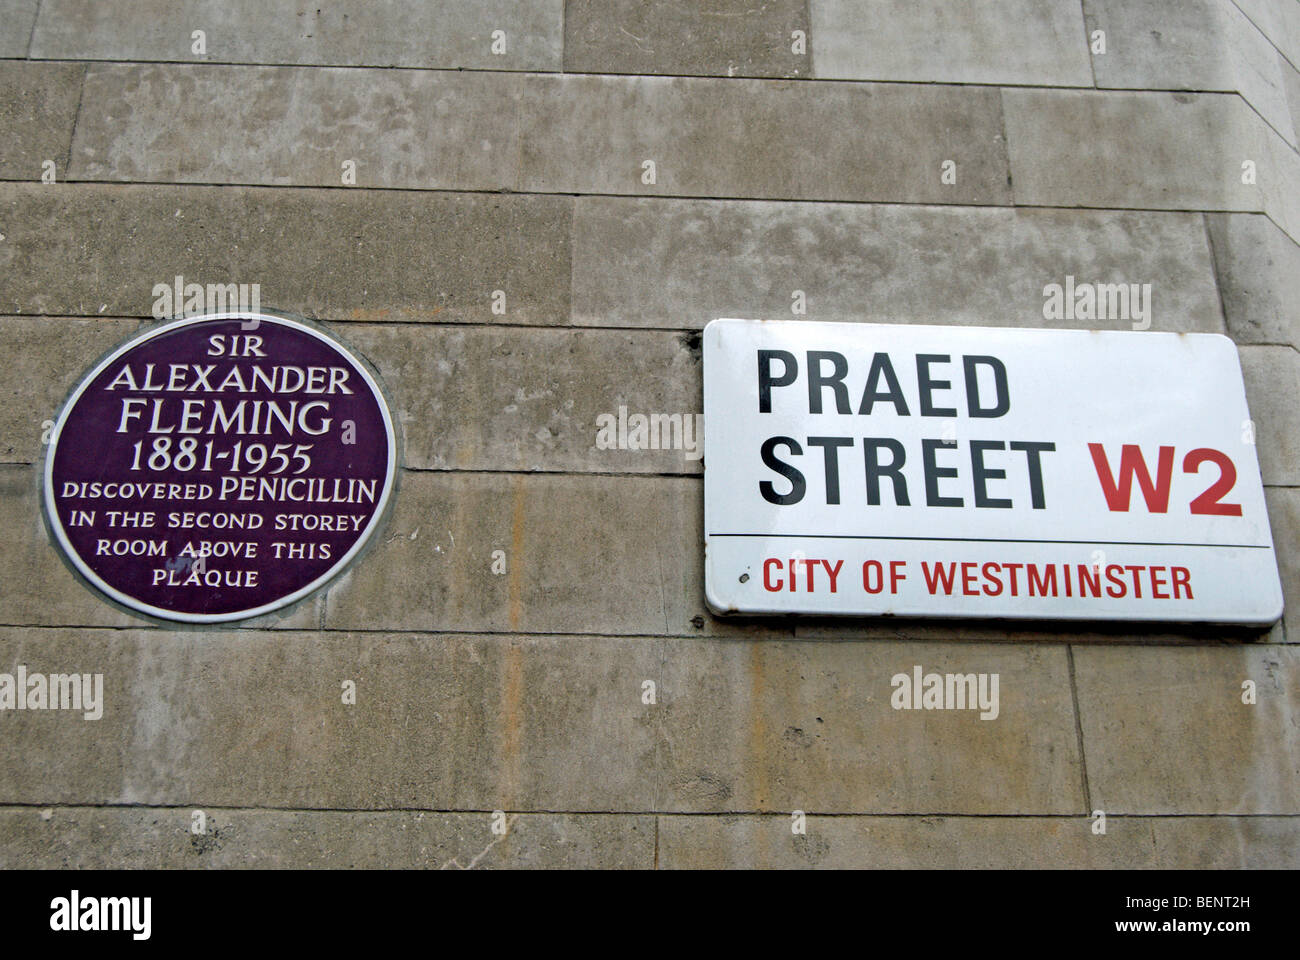 Plaque commémorative au St Mary's Hospital, Londres, Angleterre, marquant l'emplacement où Alexander Fleming a découvert la pénicilline Banque D'Images